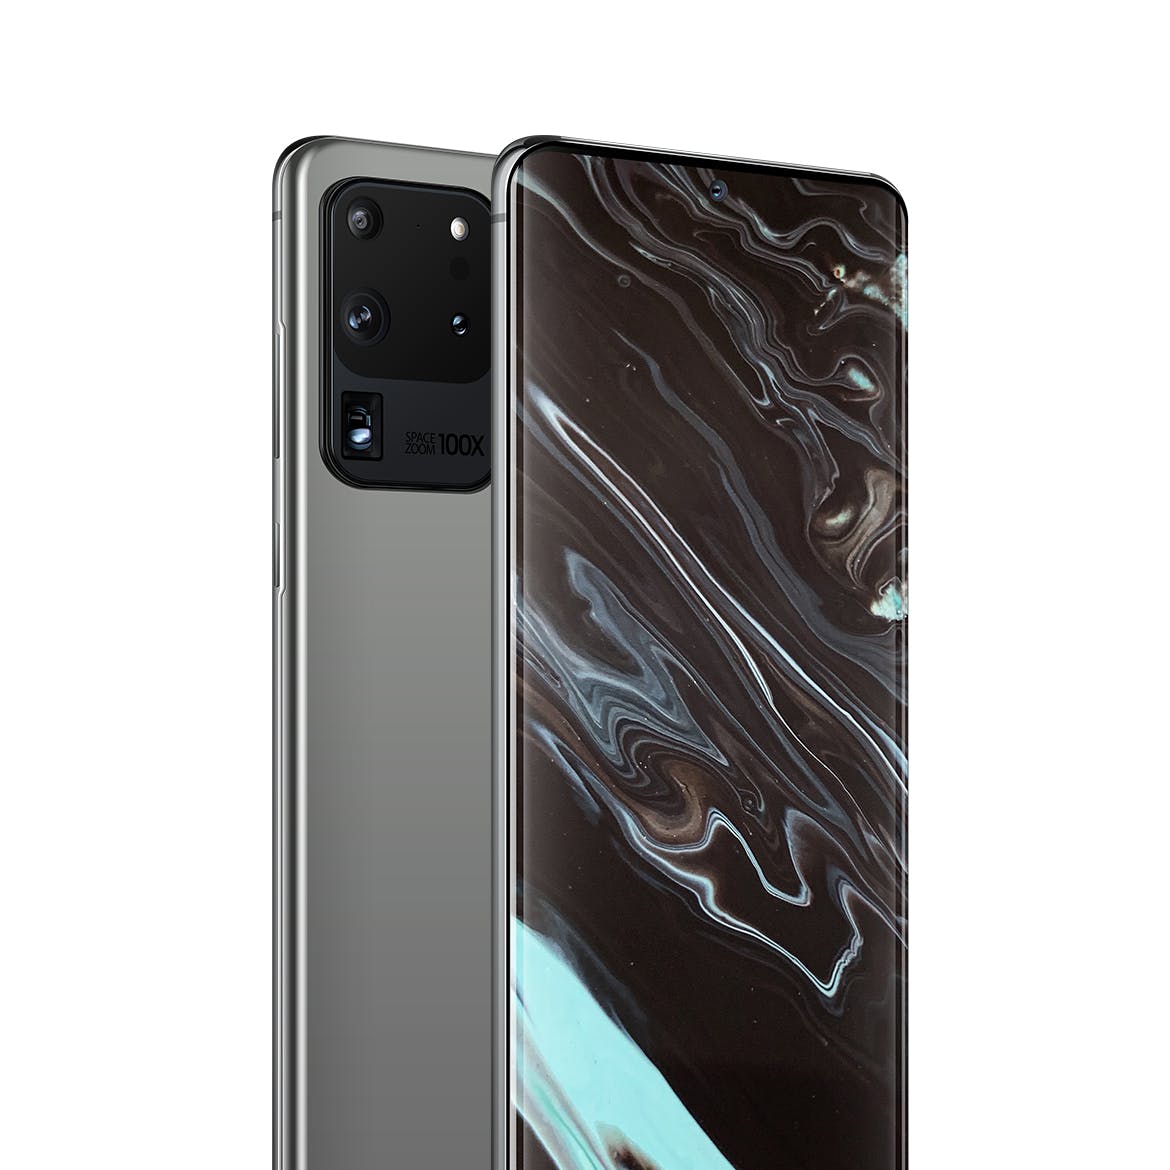 三星Galaxy S20 Ultra智能手机UI设计屏幕预览素材中国精选样机 S20 Ultra Layered PSD Mockups插图(1)